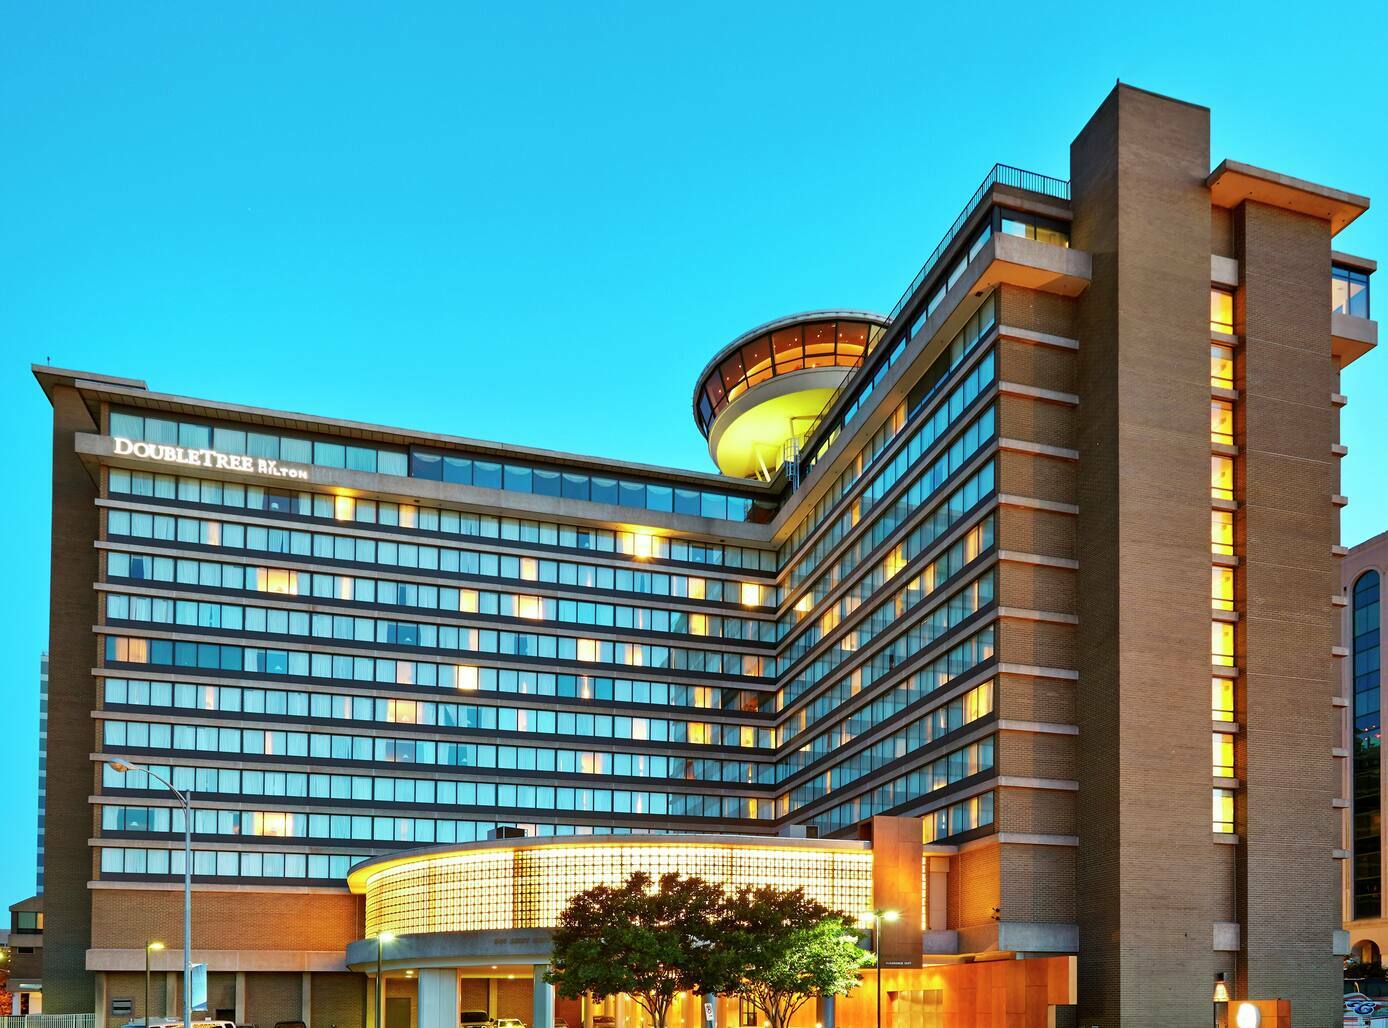 Photo of DoubleTree by Hilton Hotel Washington DC - Crystal City, Arlington, VA